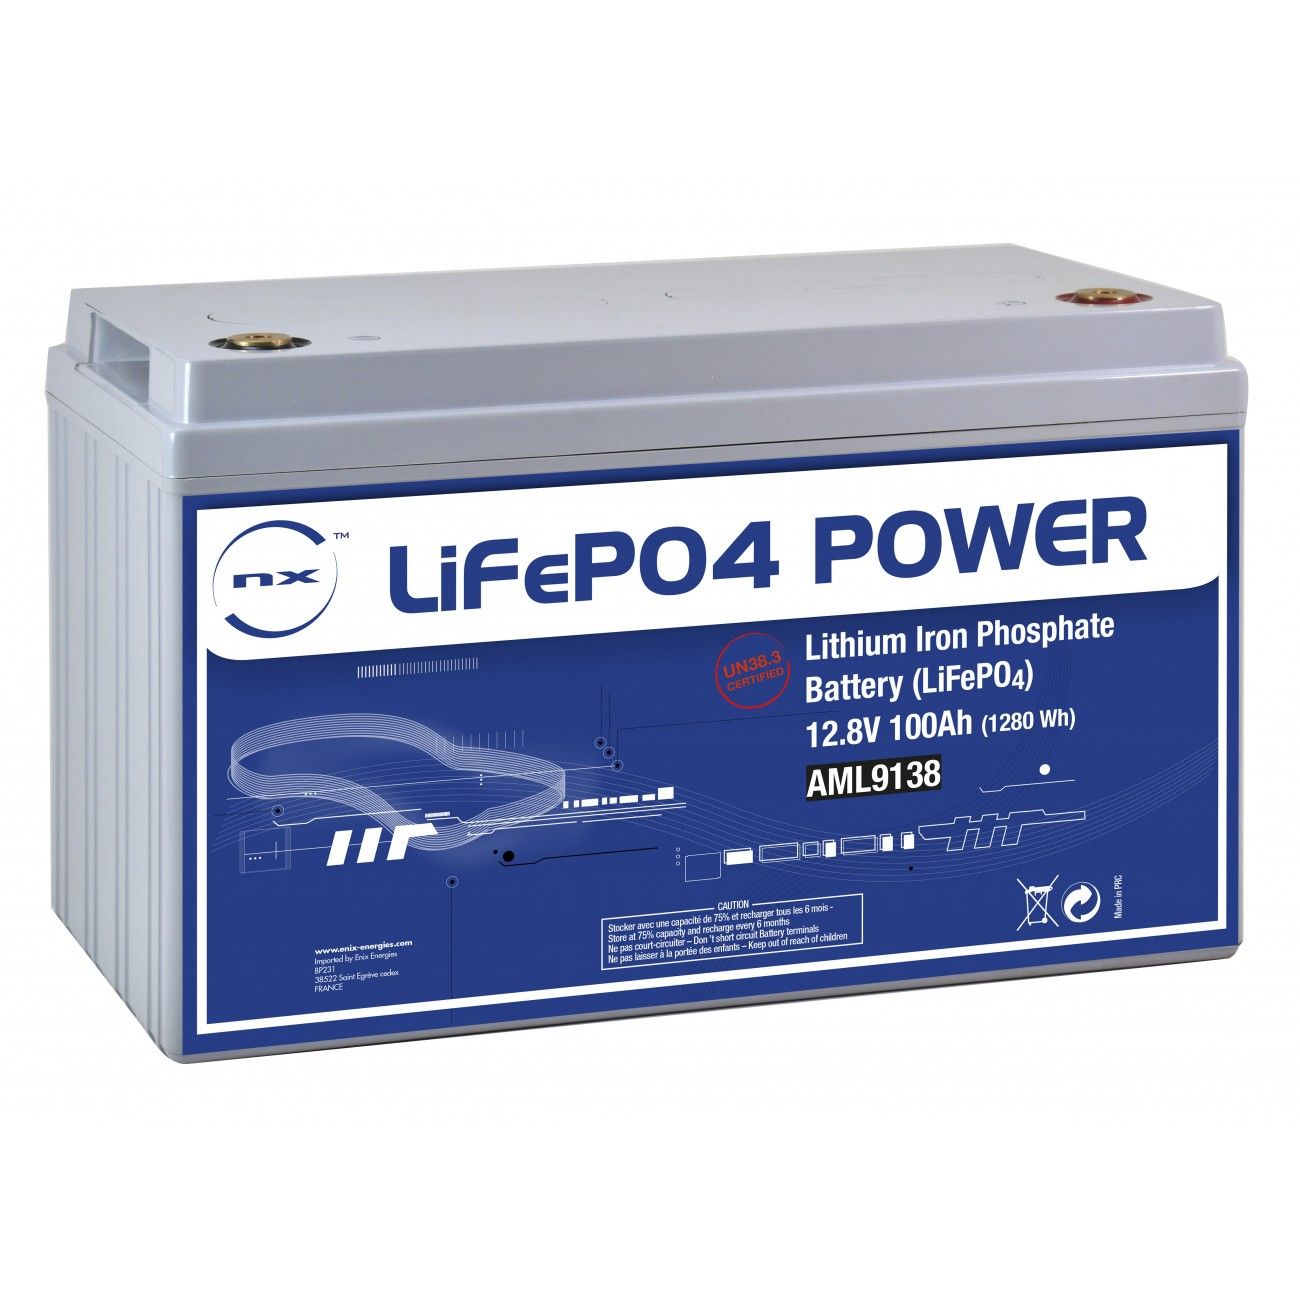 Batterie lithium fer phosphate UN38.3 (230.4Wh) 12V 18Ah M6-M